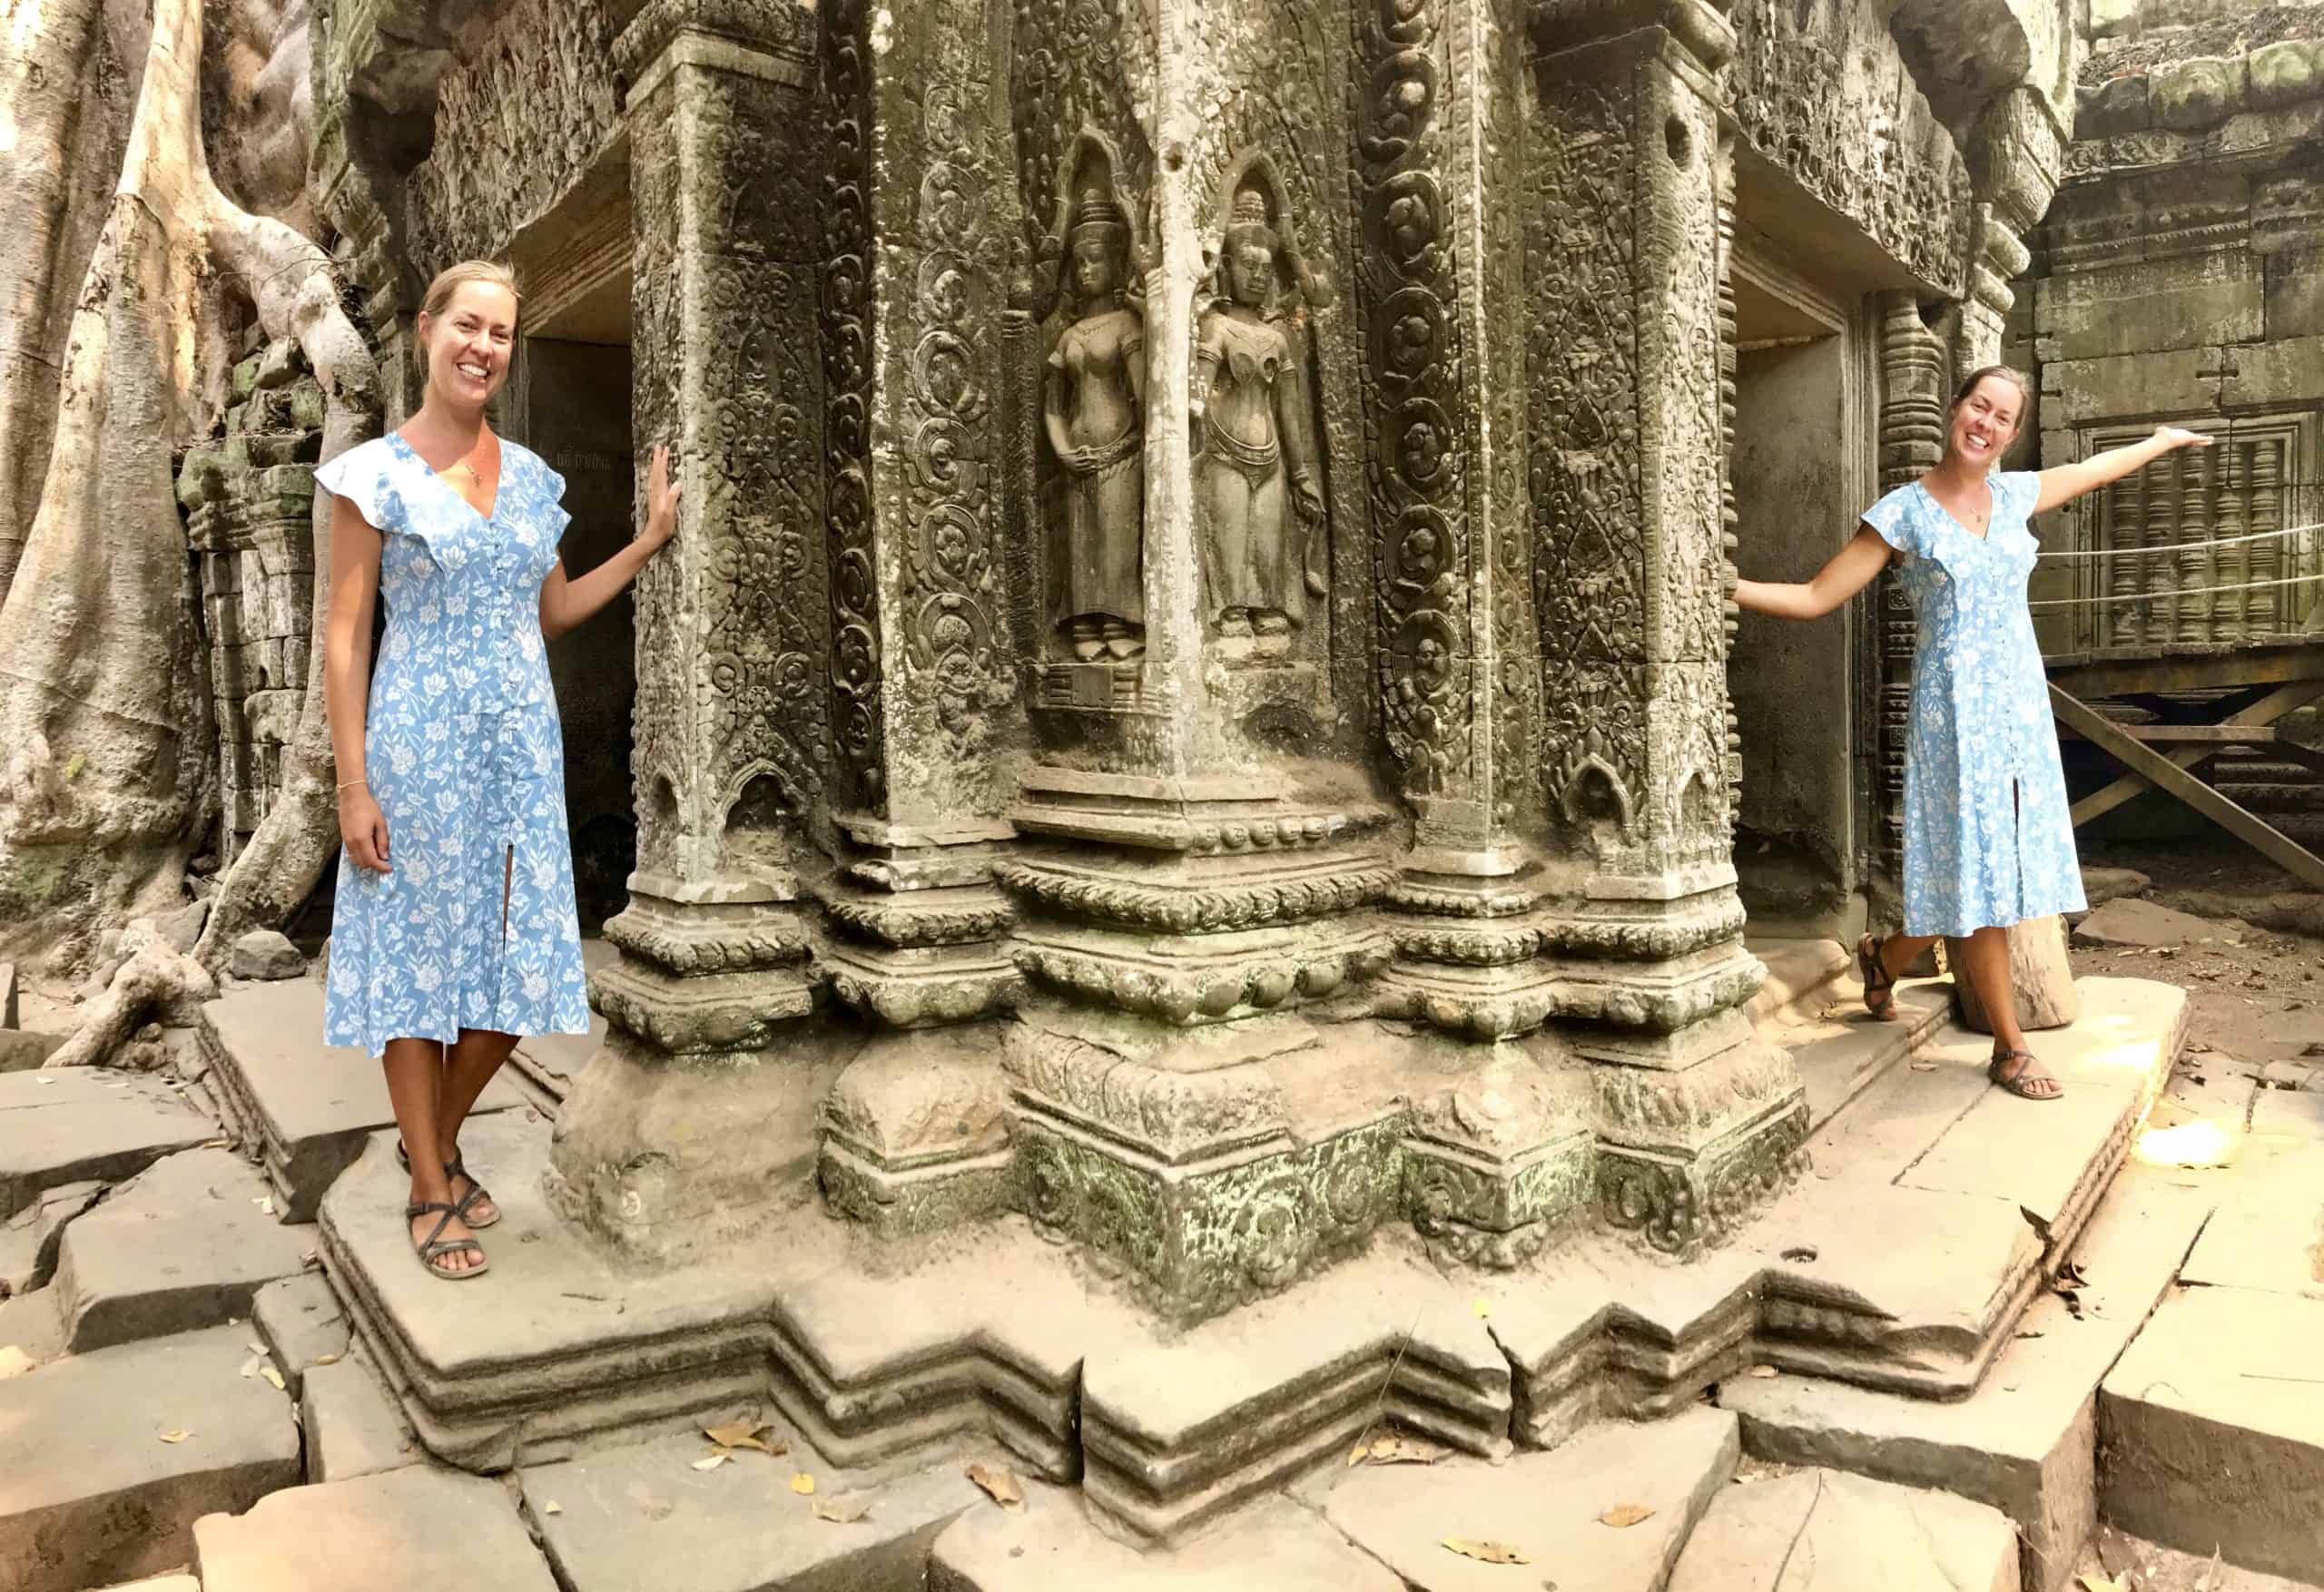 Fun photo opp at Angkor Wat temples